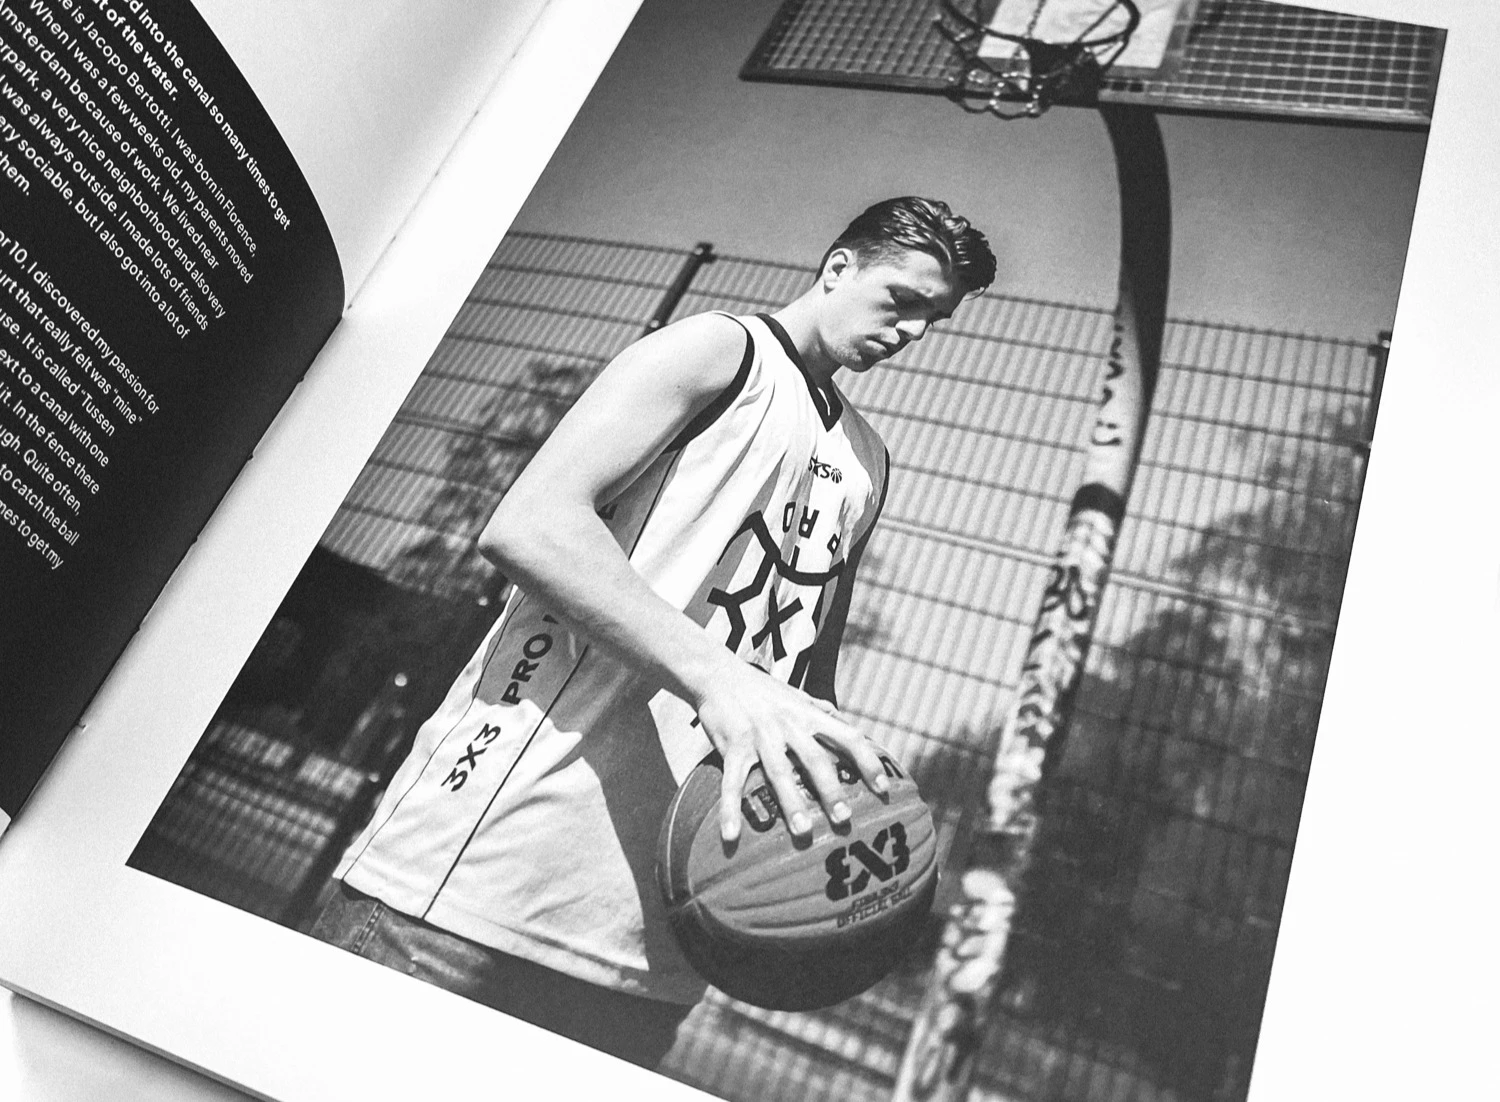 Fotograaf Arno Stevens maakt fotoboek van Amsterdamse basketballer en rolmodel Lindsay Pengel 